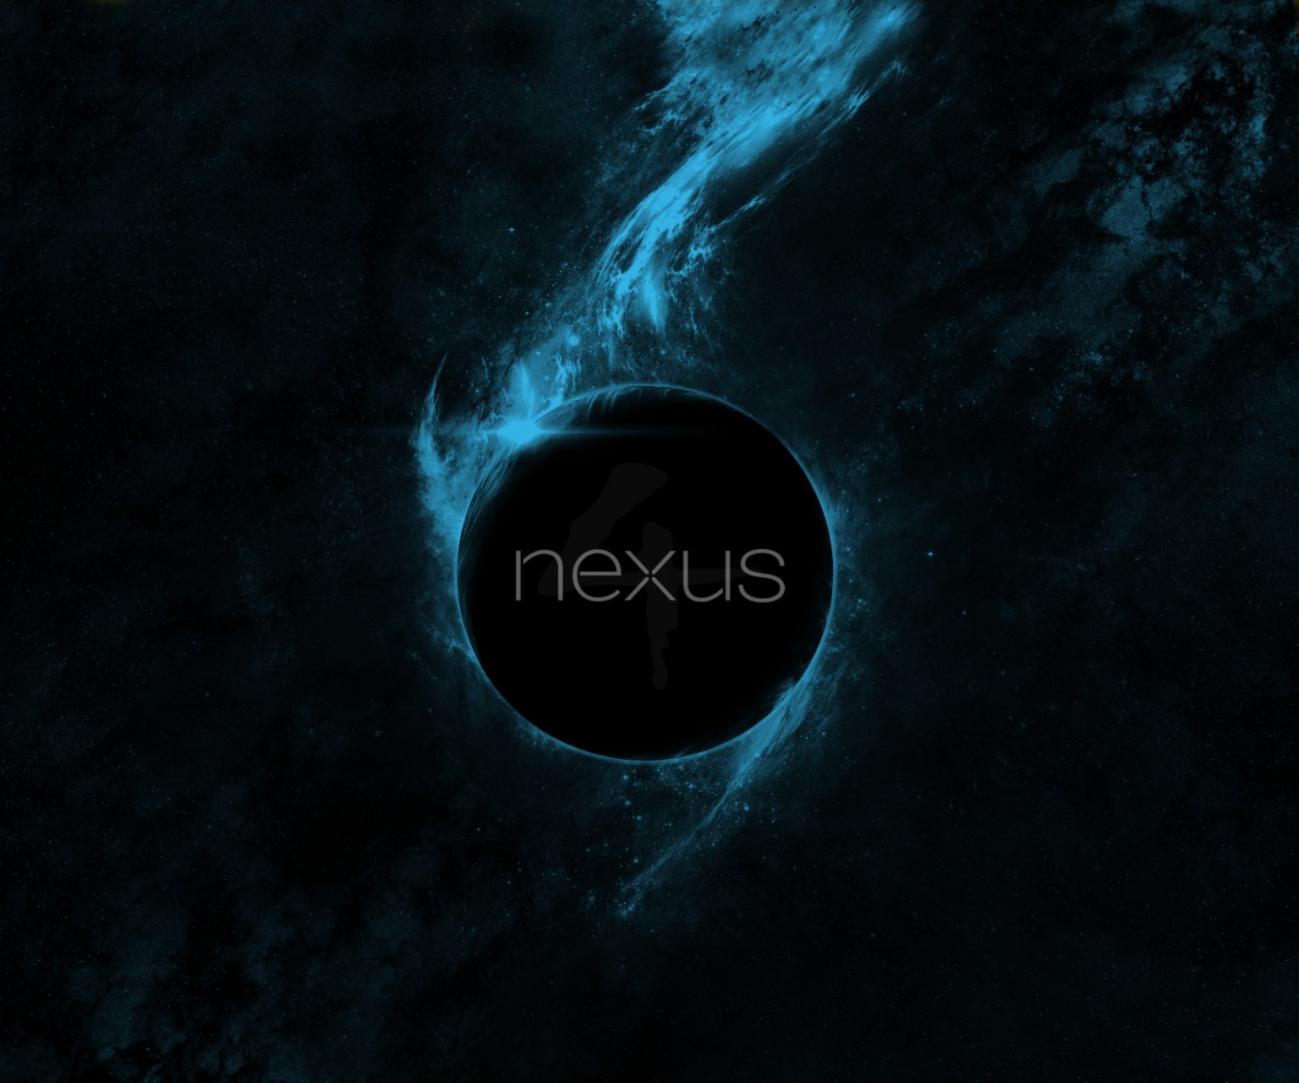 Nexus HD Wallpaper Best